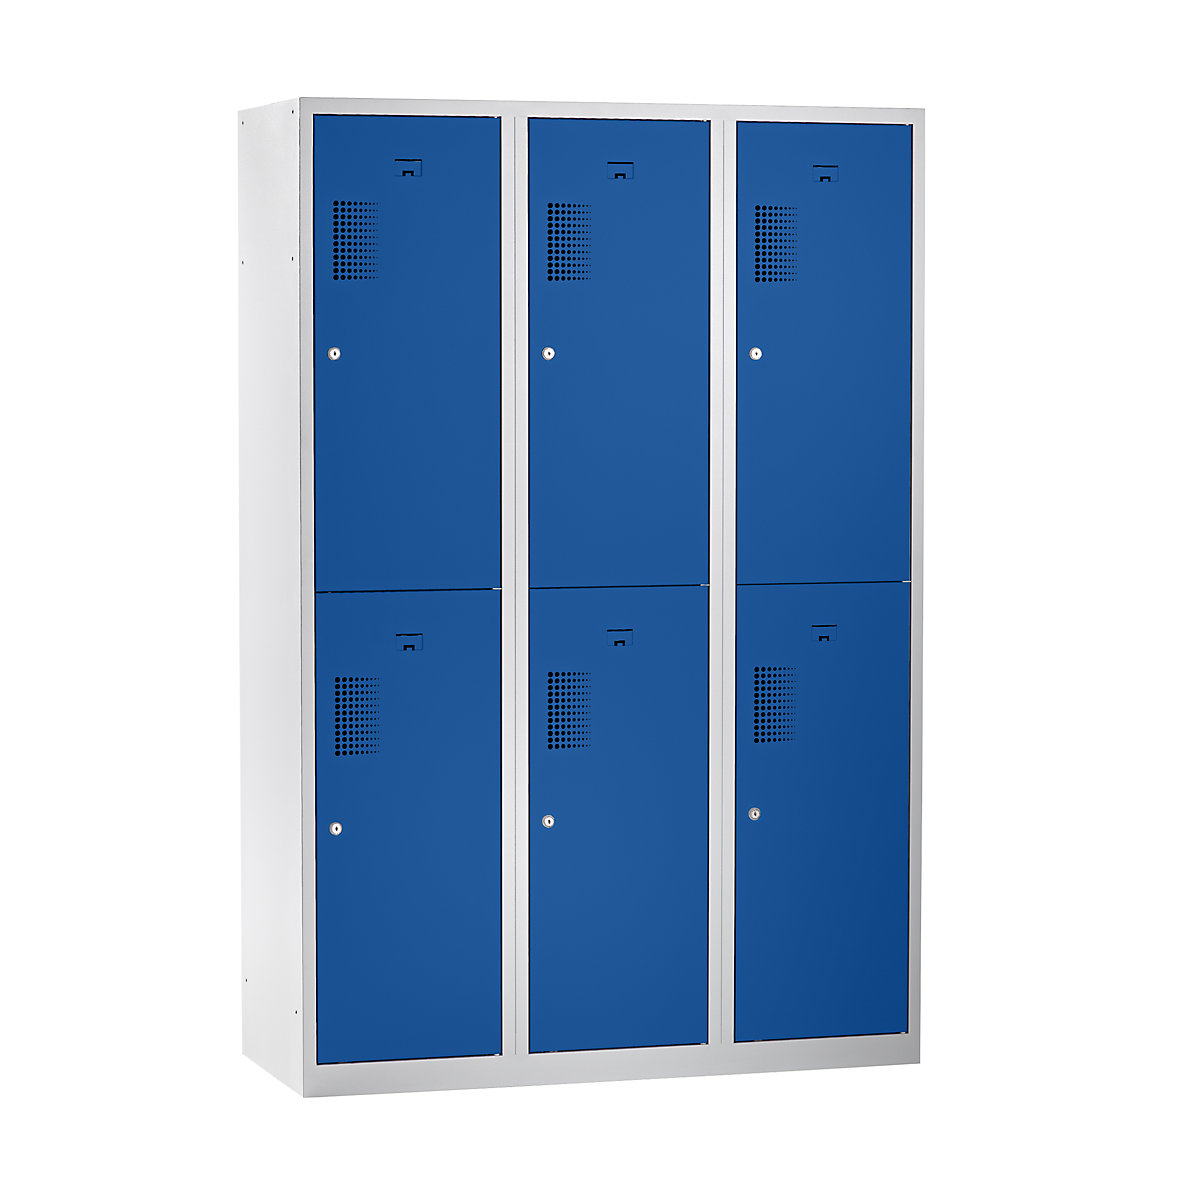 EUROKRAFTbasic Garderobenschrank, halbhohe Fächer, Breite 1200 mm, 6 Fächer, lichtgrau / enzianblau